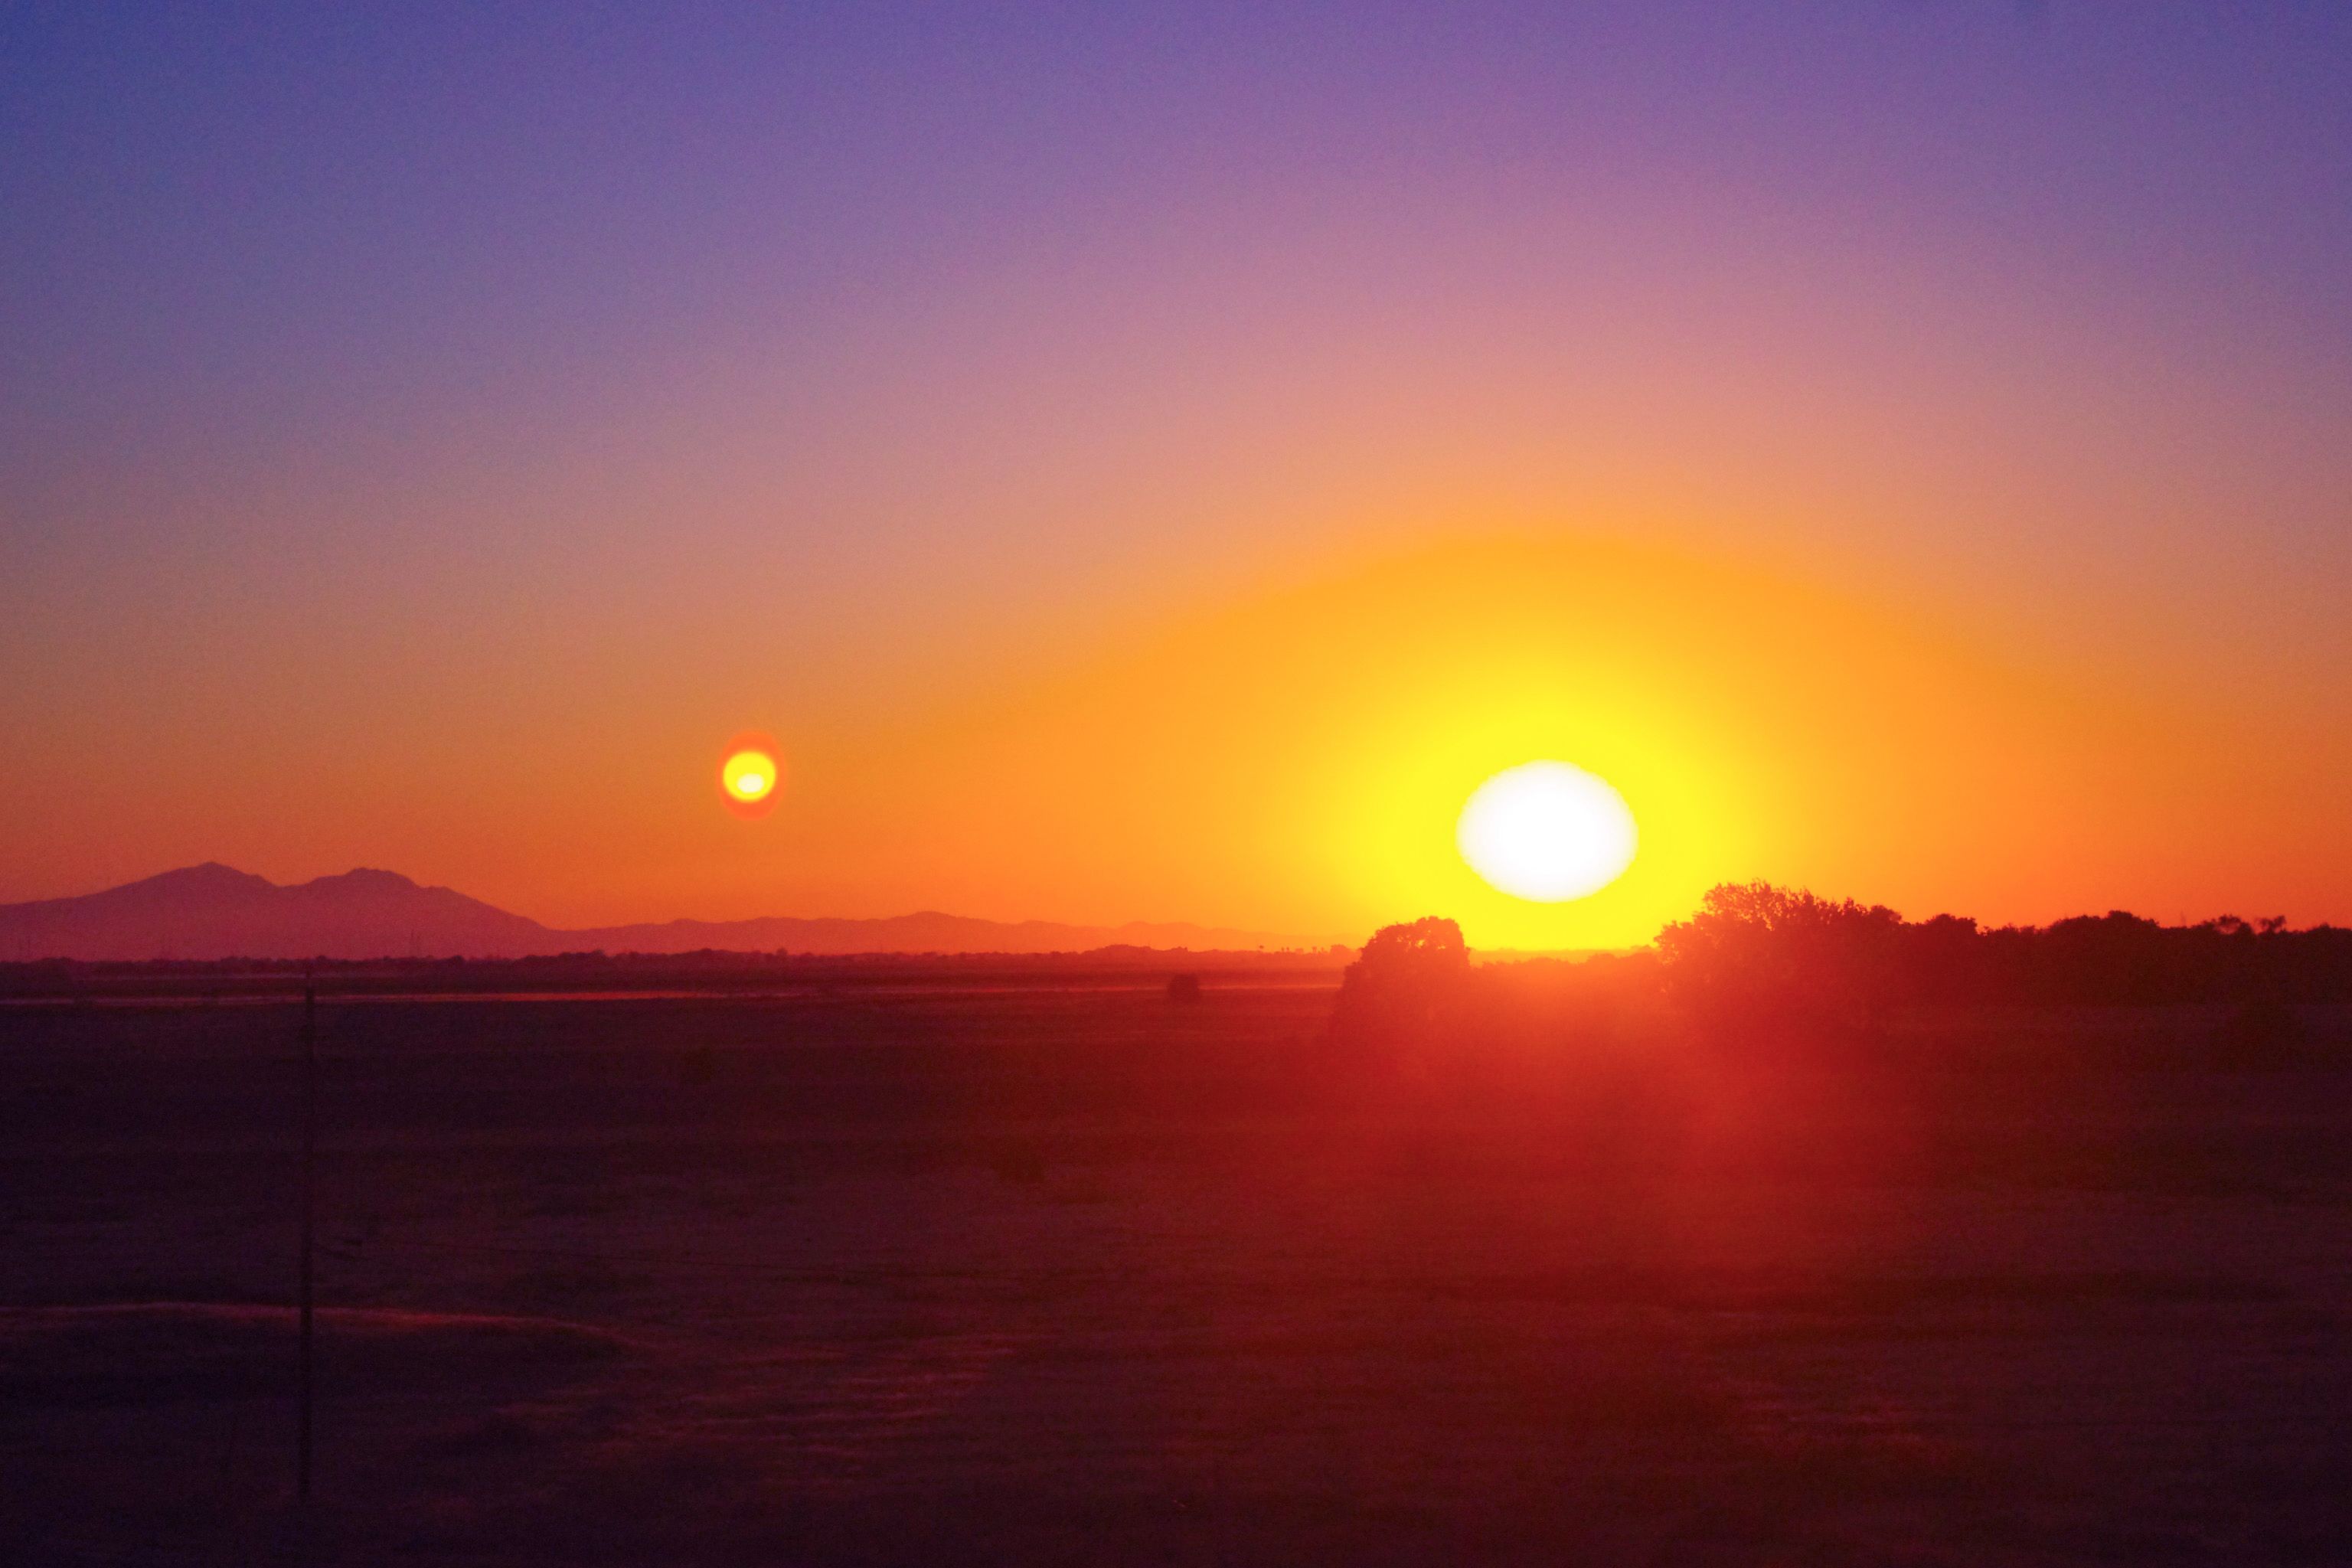 Beautiful Warm Sunsets Sun Star California Nature Landscape Photography 2012 003.jpg